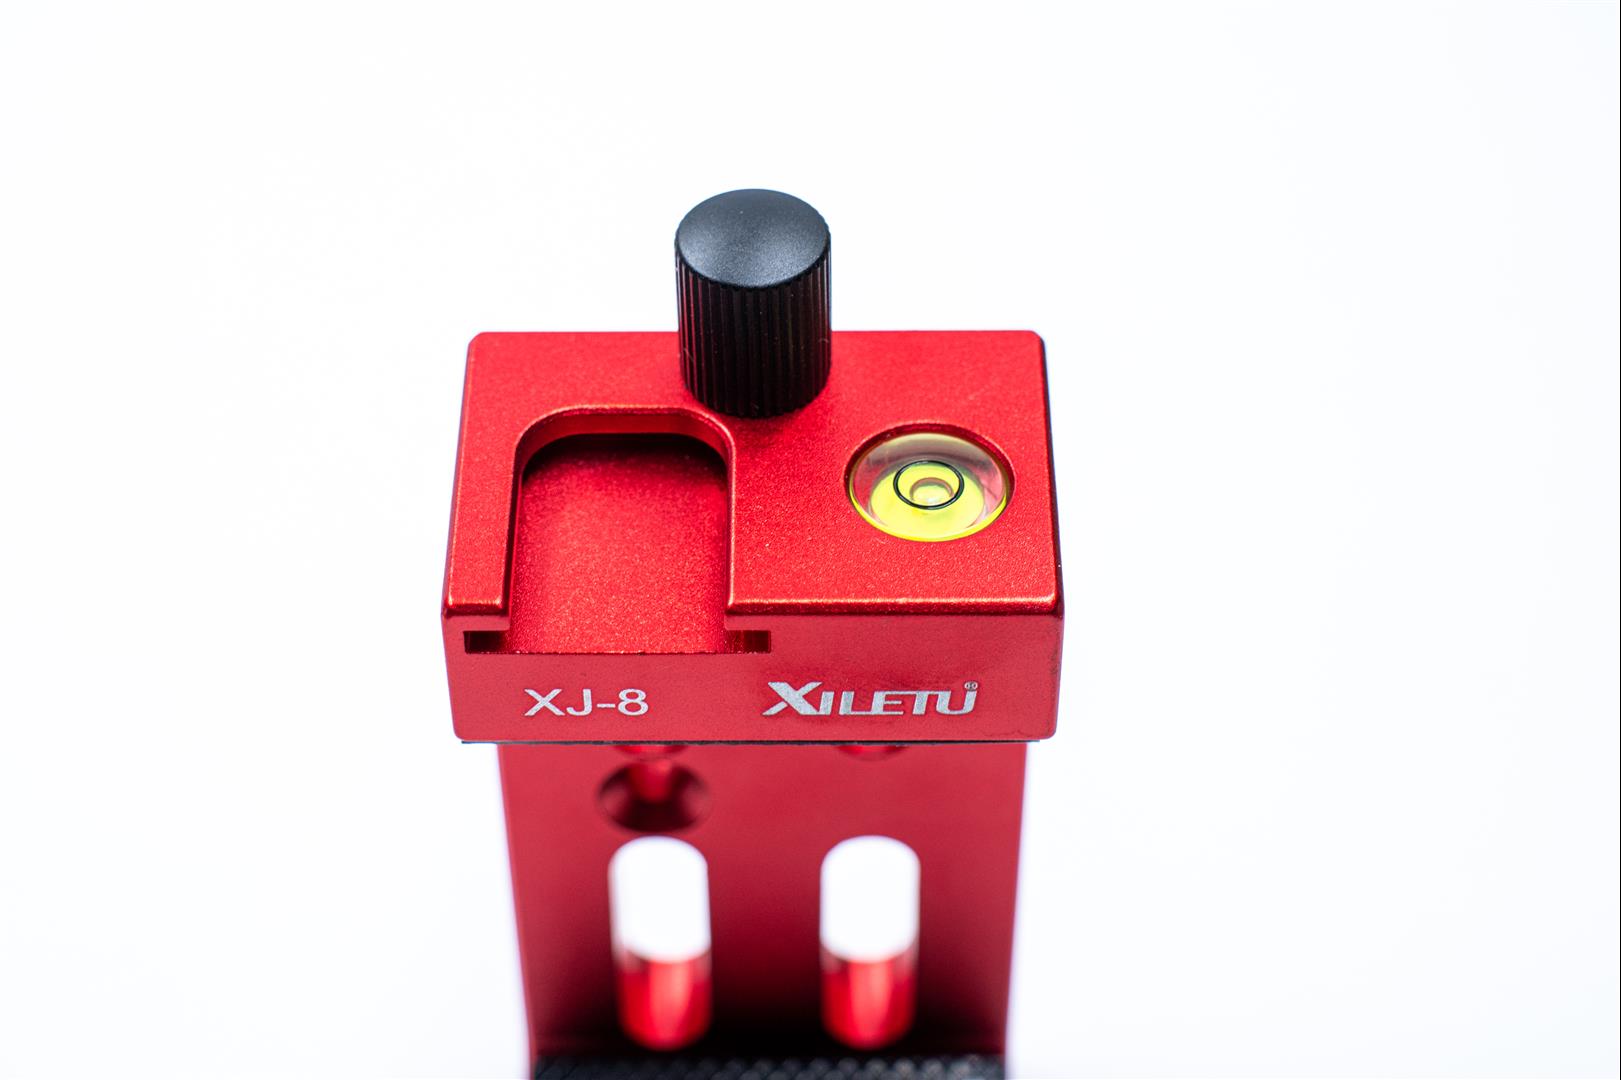 [玩攝影92] XILETU XJ-8 喜樂途手機夾，金屬陽極處理，精緻穩固多孔擴充方便